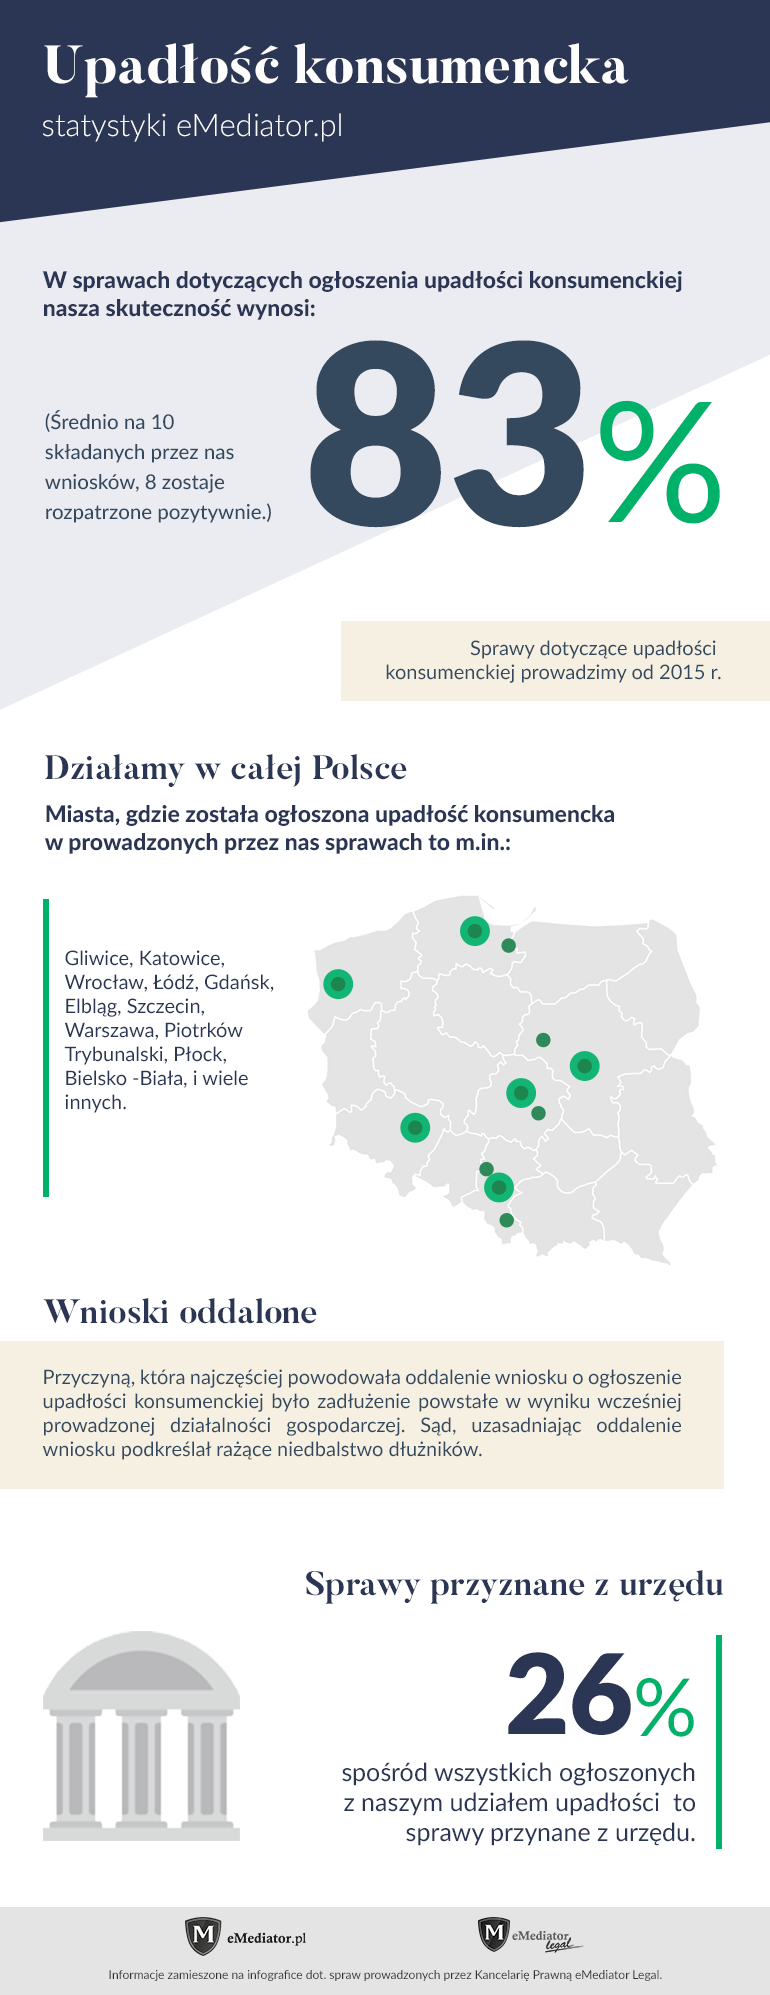 Upadłość konsumencka skuteczność eMediator.pl